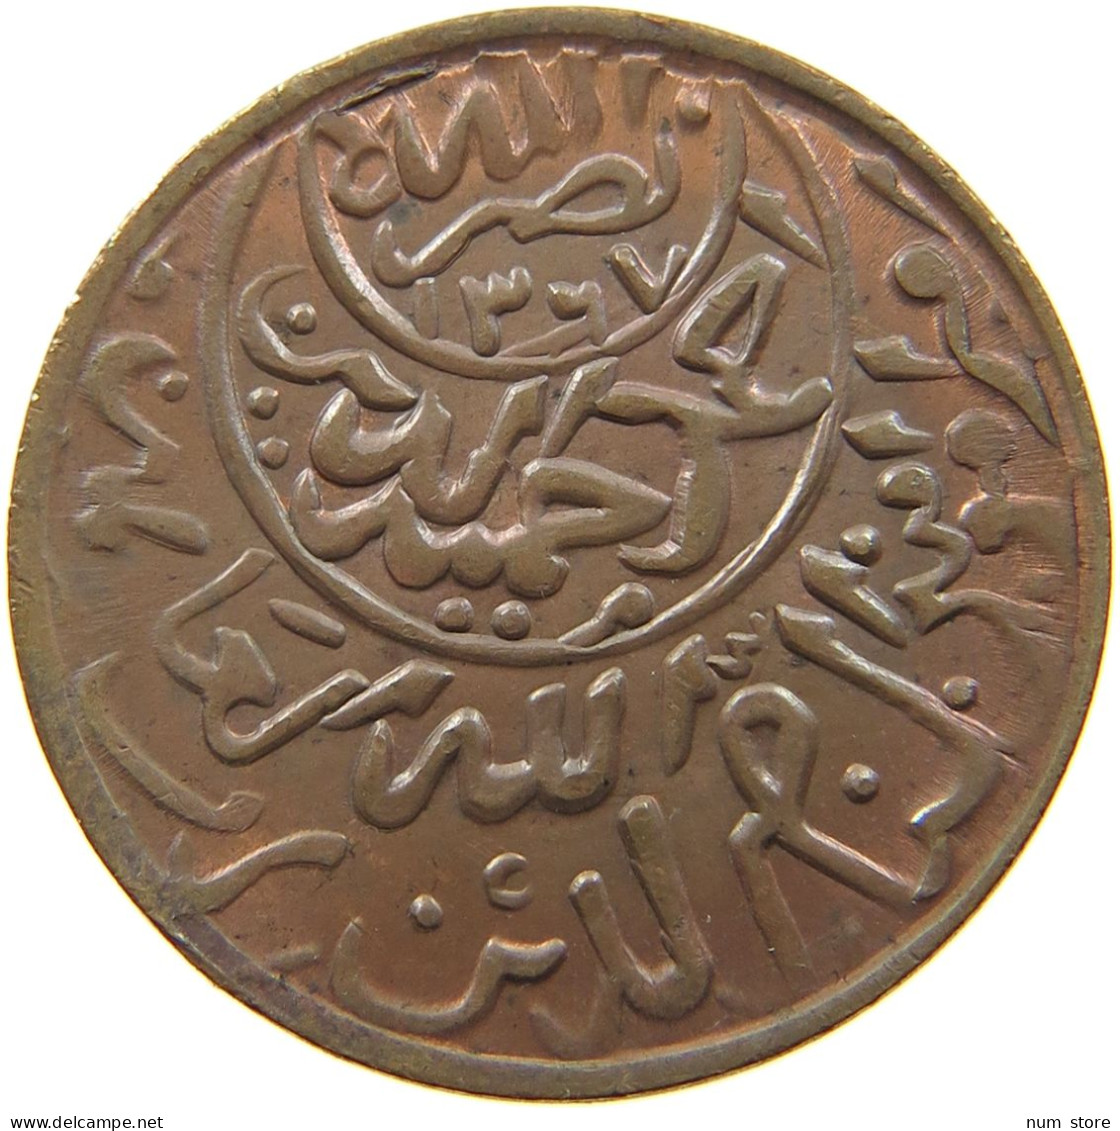 YEMEN 1/40 RIYAL 1373 AL-NASIR AHMAD BIN YAHA (IMAN AHMAD) 1948-1962 AD, AH 1367-1382. #MA 003241 - Yemen